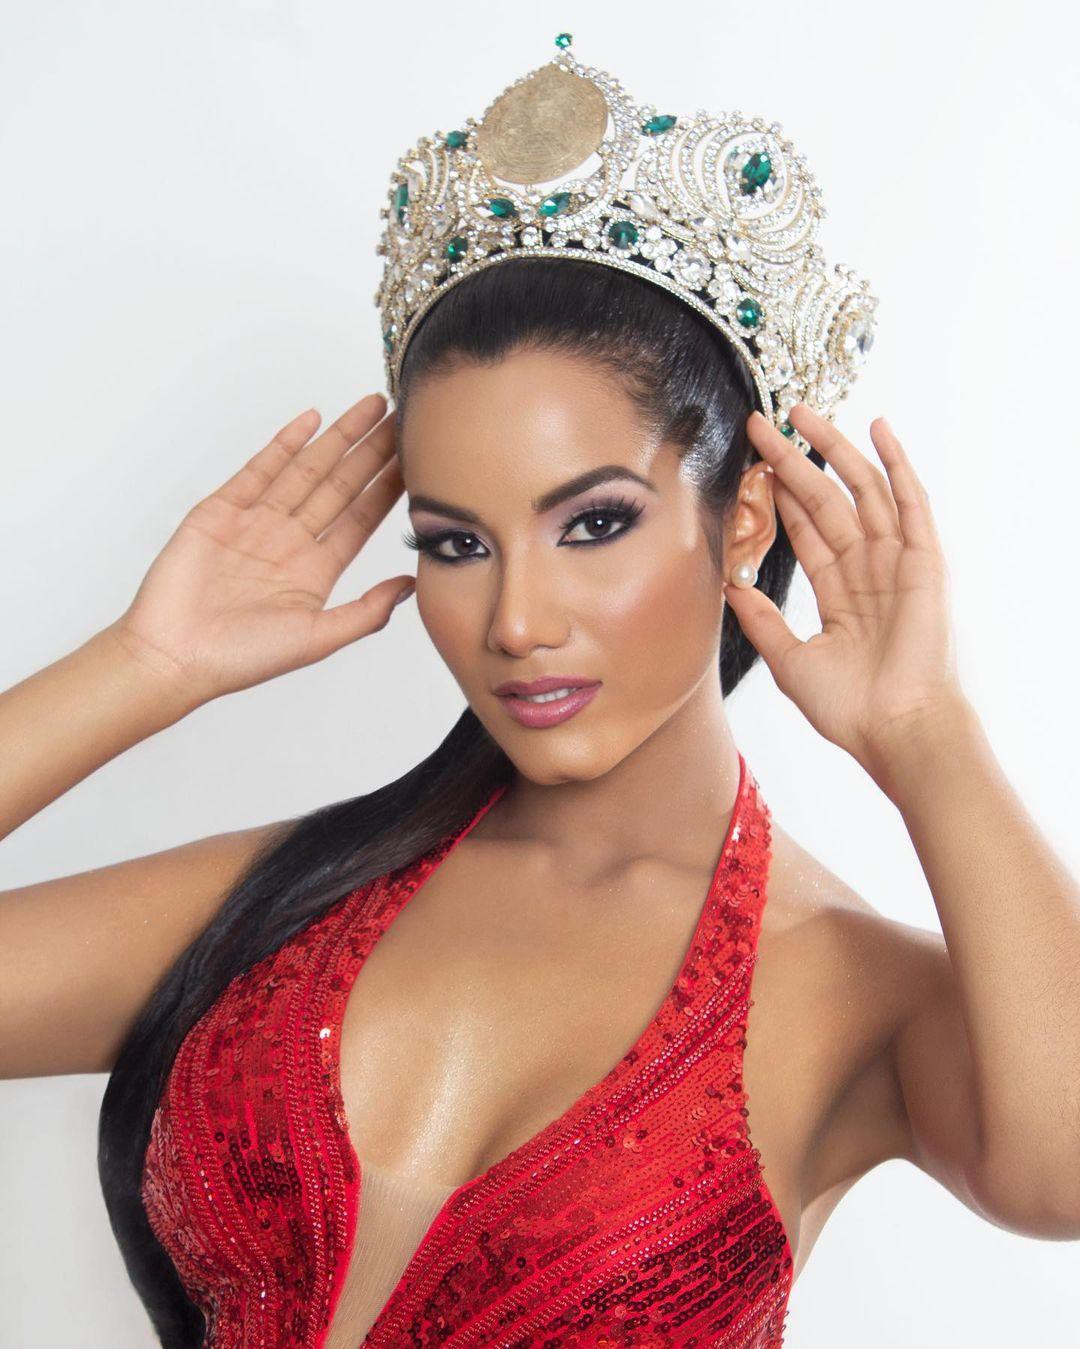 Tân Hoa hậu Siêu quốc gia Venezuela lộ diện: Body cực sexy nhưng gương mặt bị chê già trước tuổi - Ảnh 1.